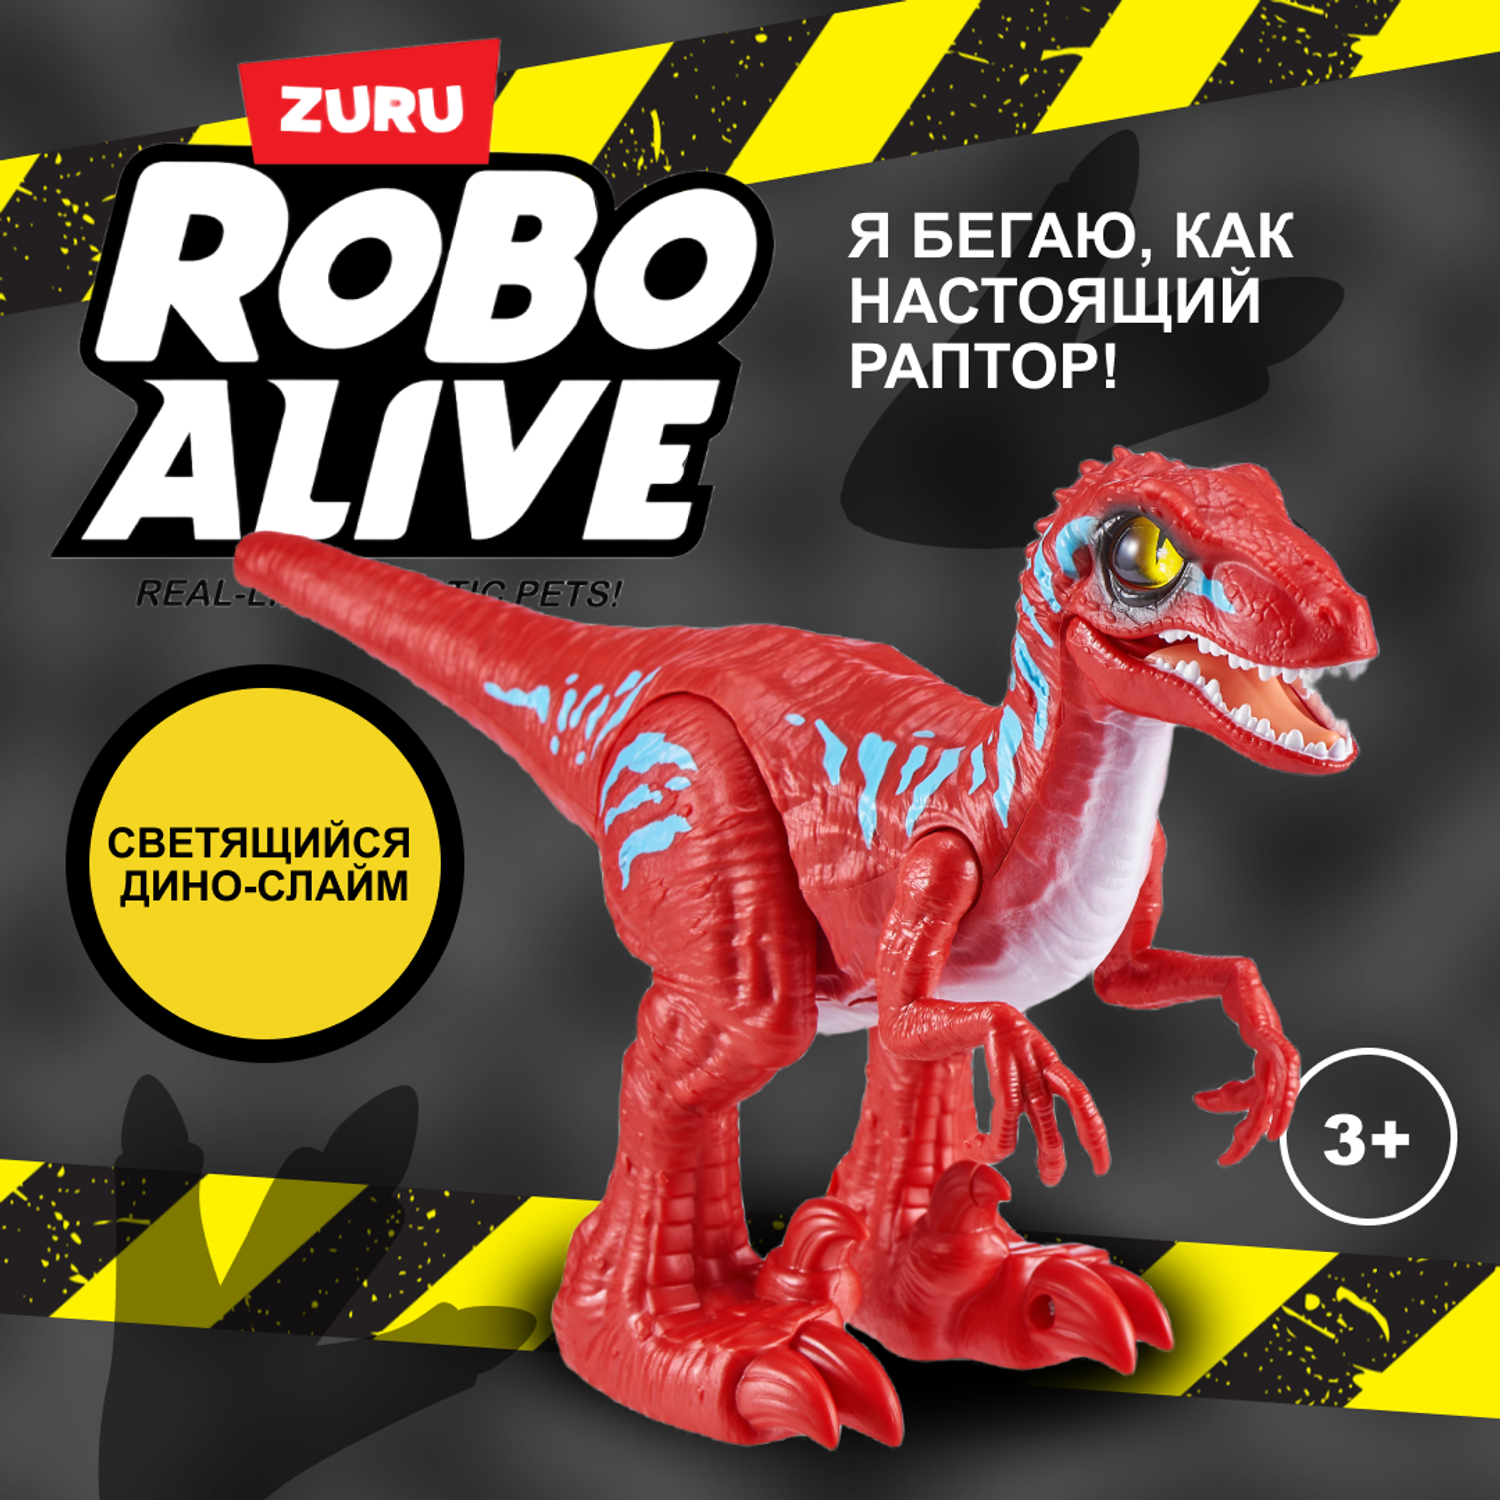 Игрушка ROBO ALIVE Zuru Raptor Зеленый 25289B - фото 1